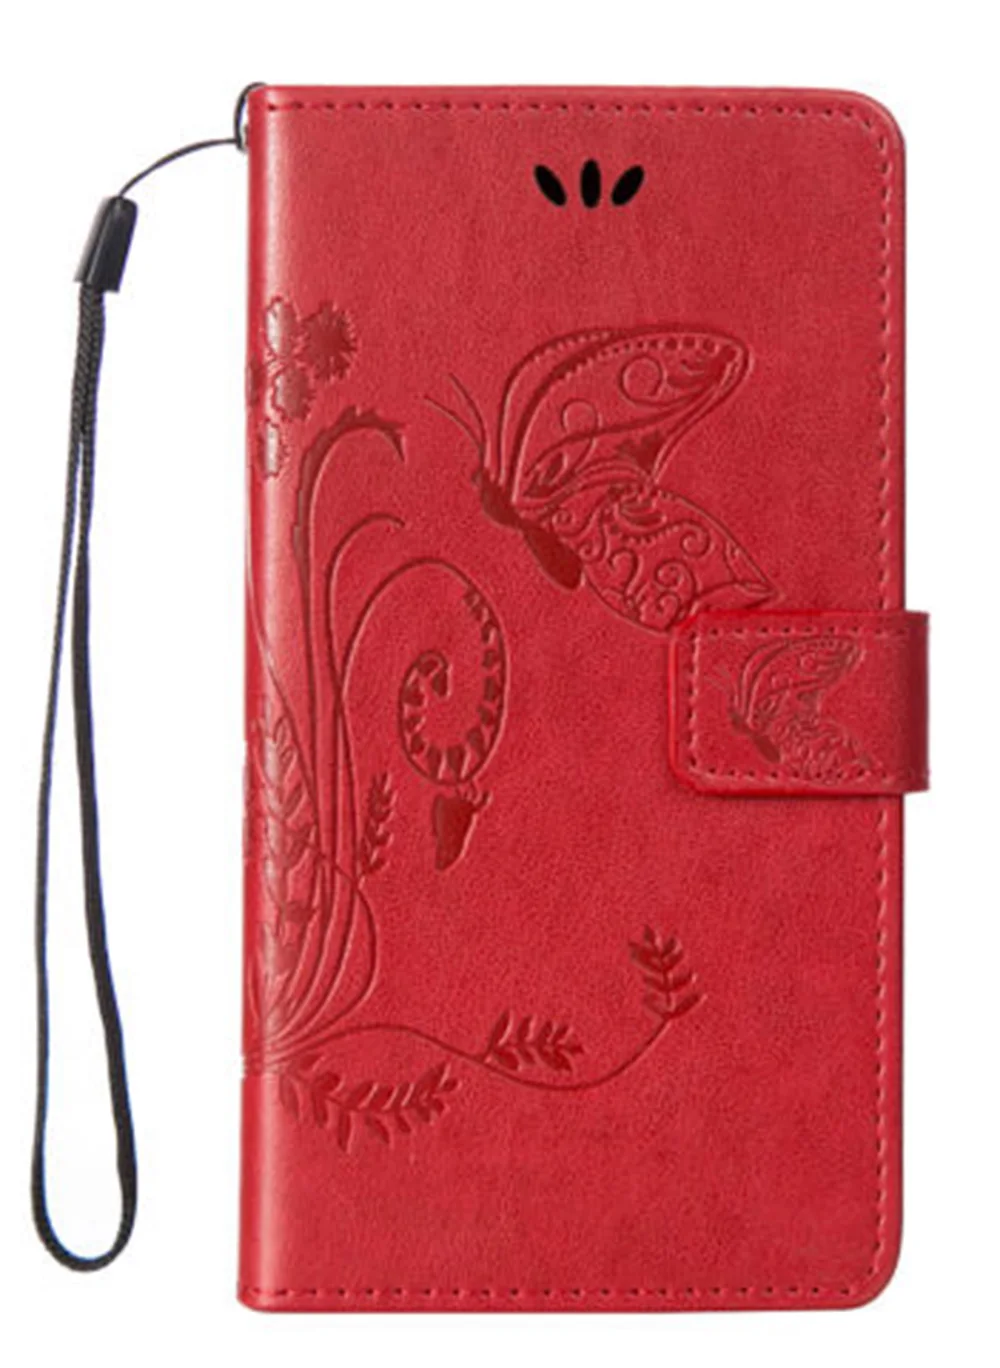 Чехол-бумажник для Philips Xenium X598 S386 V787 X588 X596, высокое качество, кожаный защитный чехол для мобильного телефона - Цвет: Red